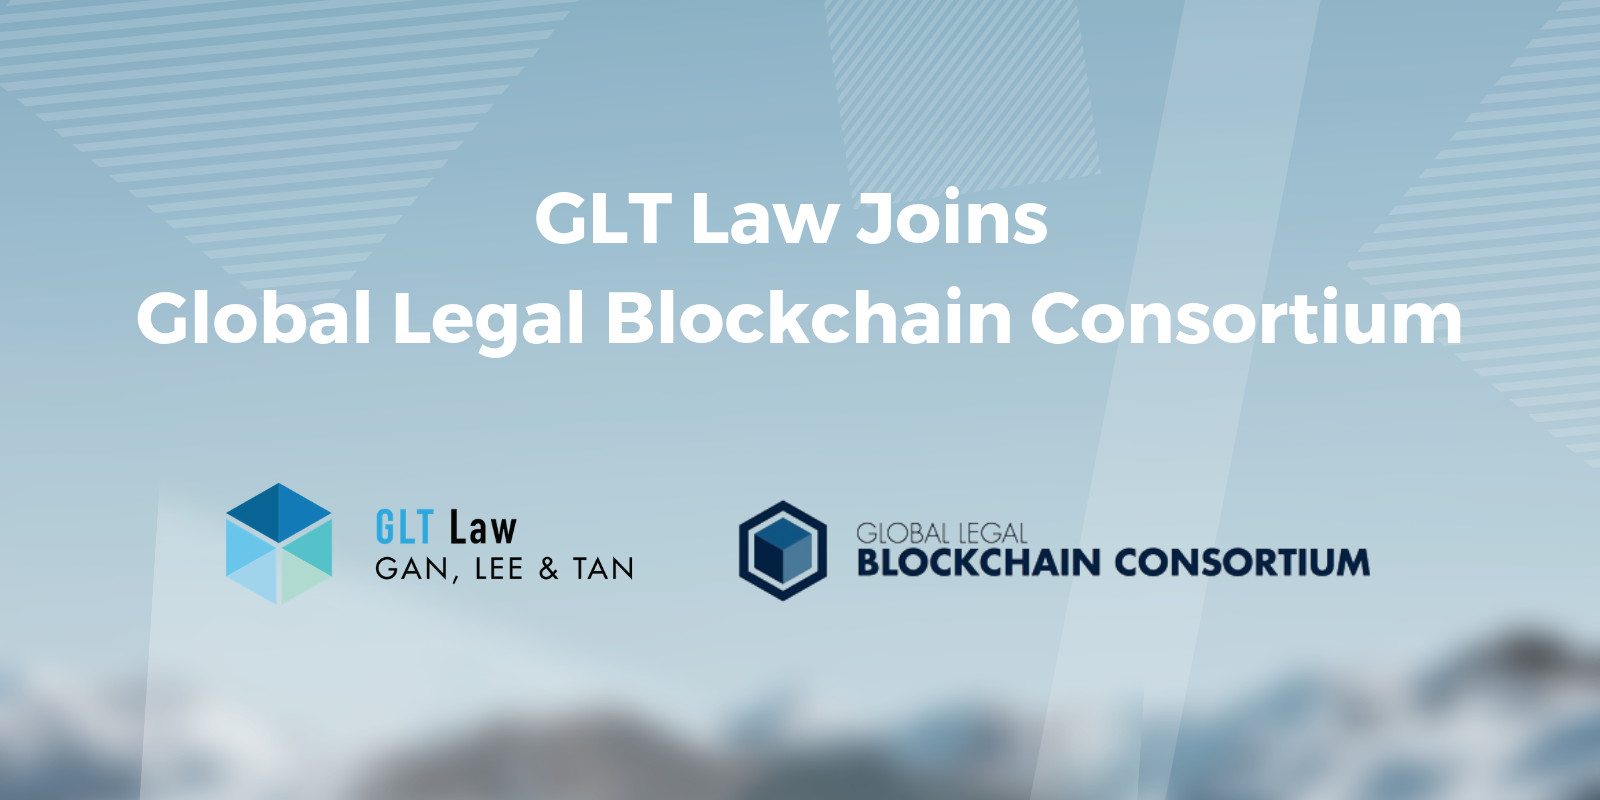 global legal blockchain consortium